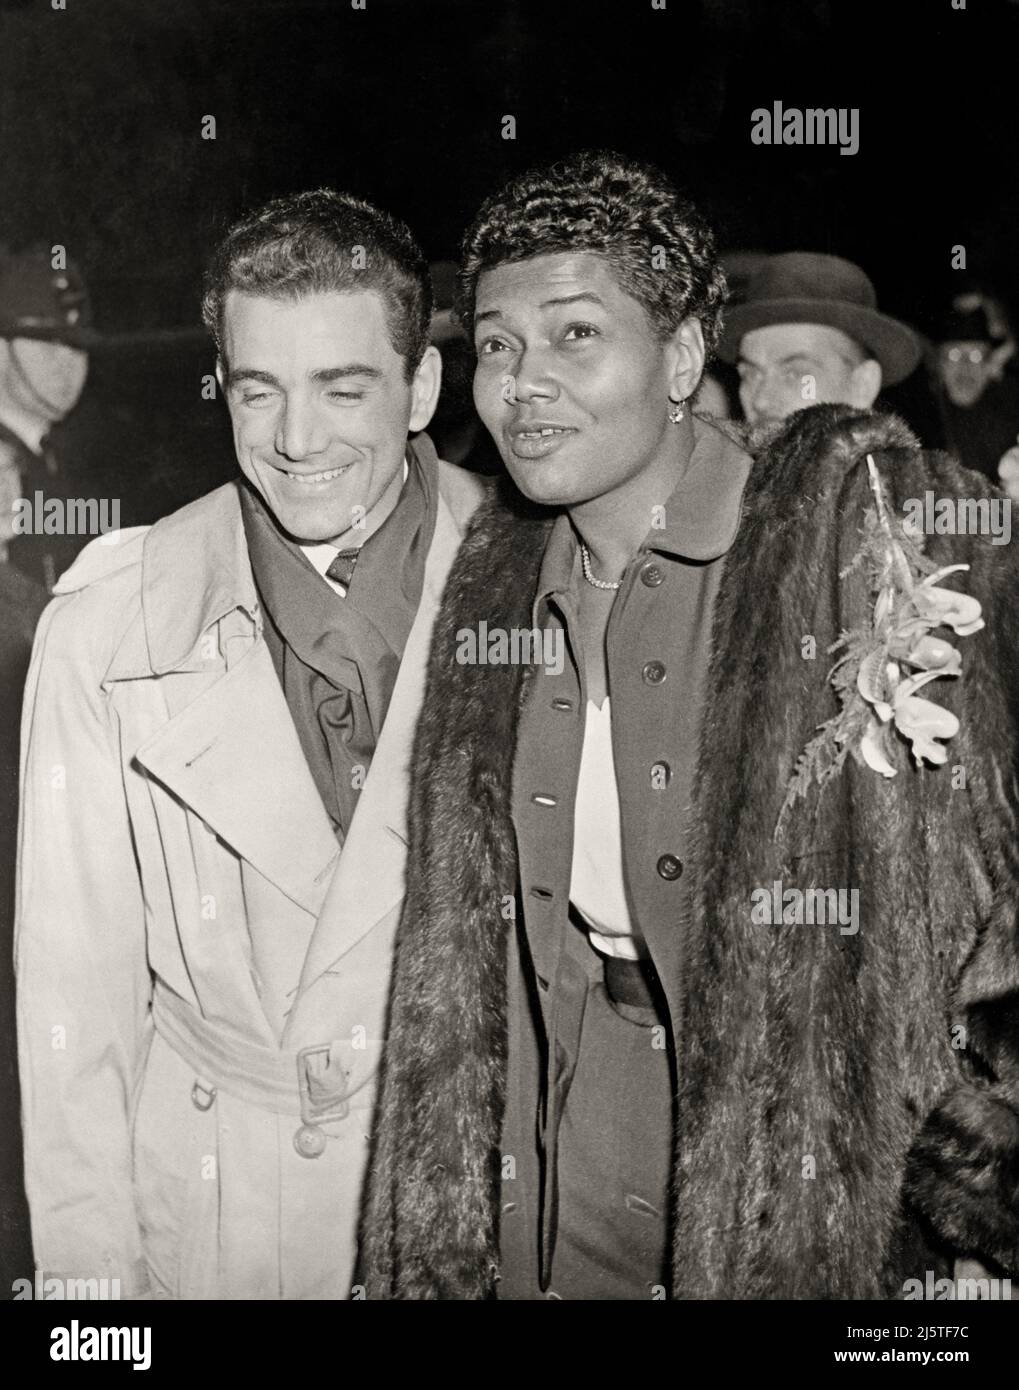 Schlagzeuger Louis Bellson Jr. und Sängerin Pearl Bailey nach ihrer Hochzeitszeremonie in London. 19. November 1952. Bild aus einem negativen 4 x 5-Zoll-Kopiervorgang. Stockfoto